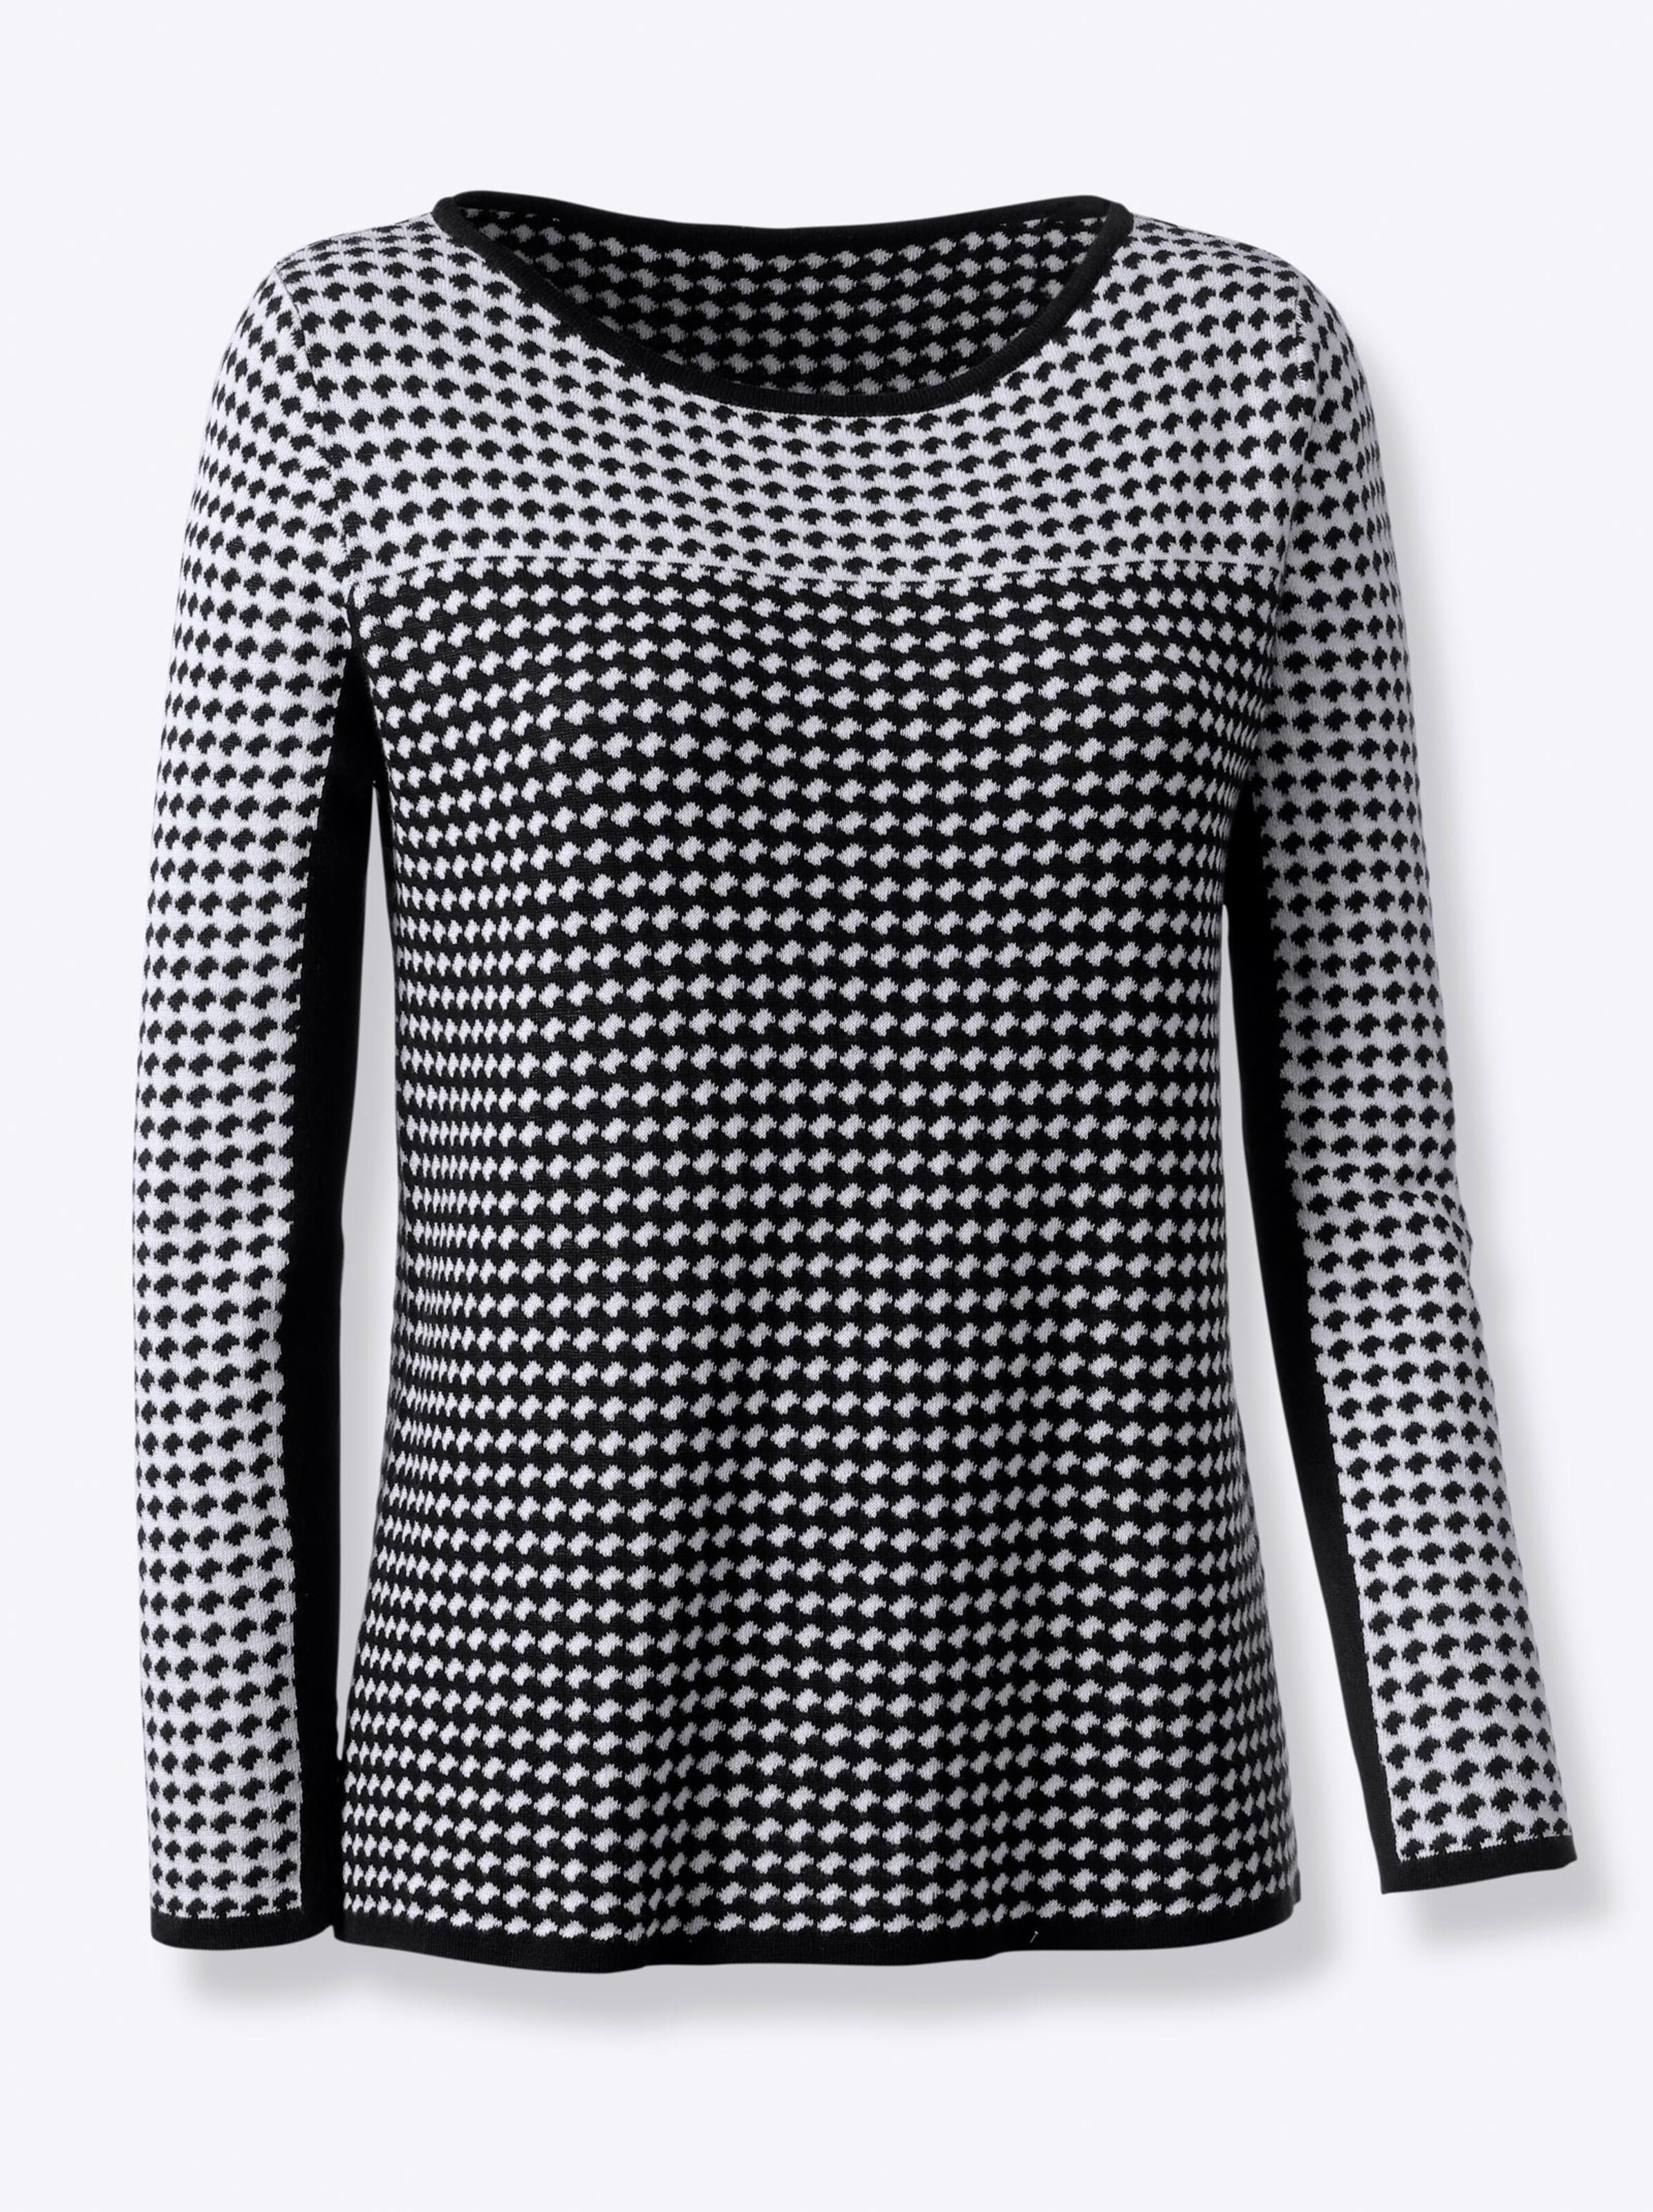 Damenmode Pullover Strickpullover in schwarz-weiß-gemustert 